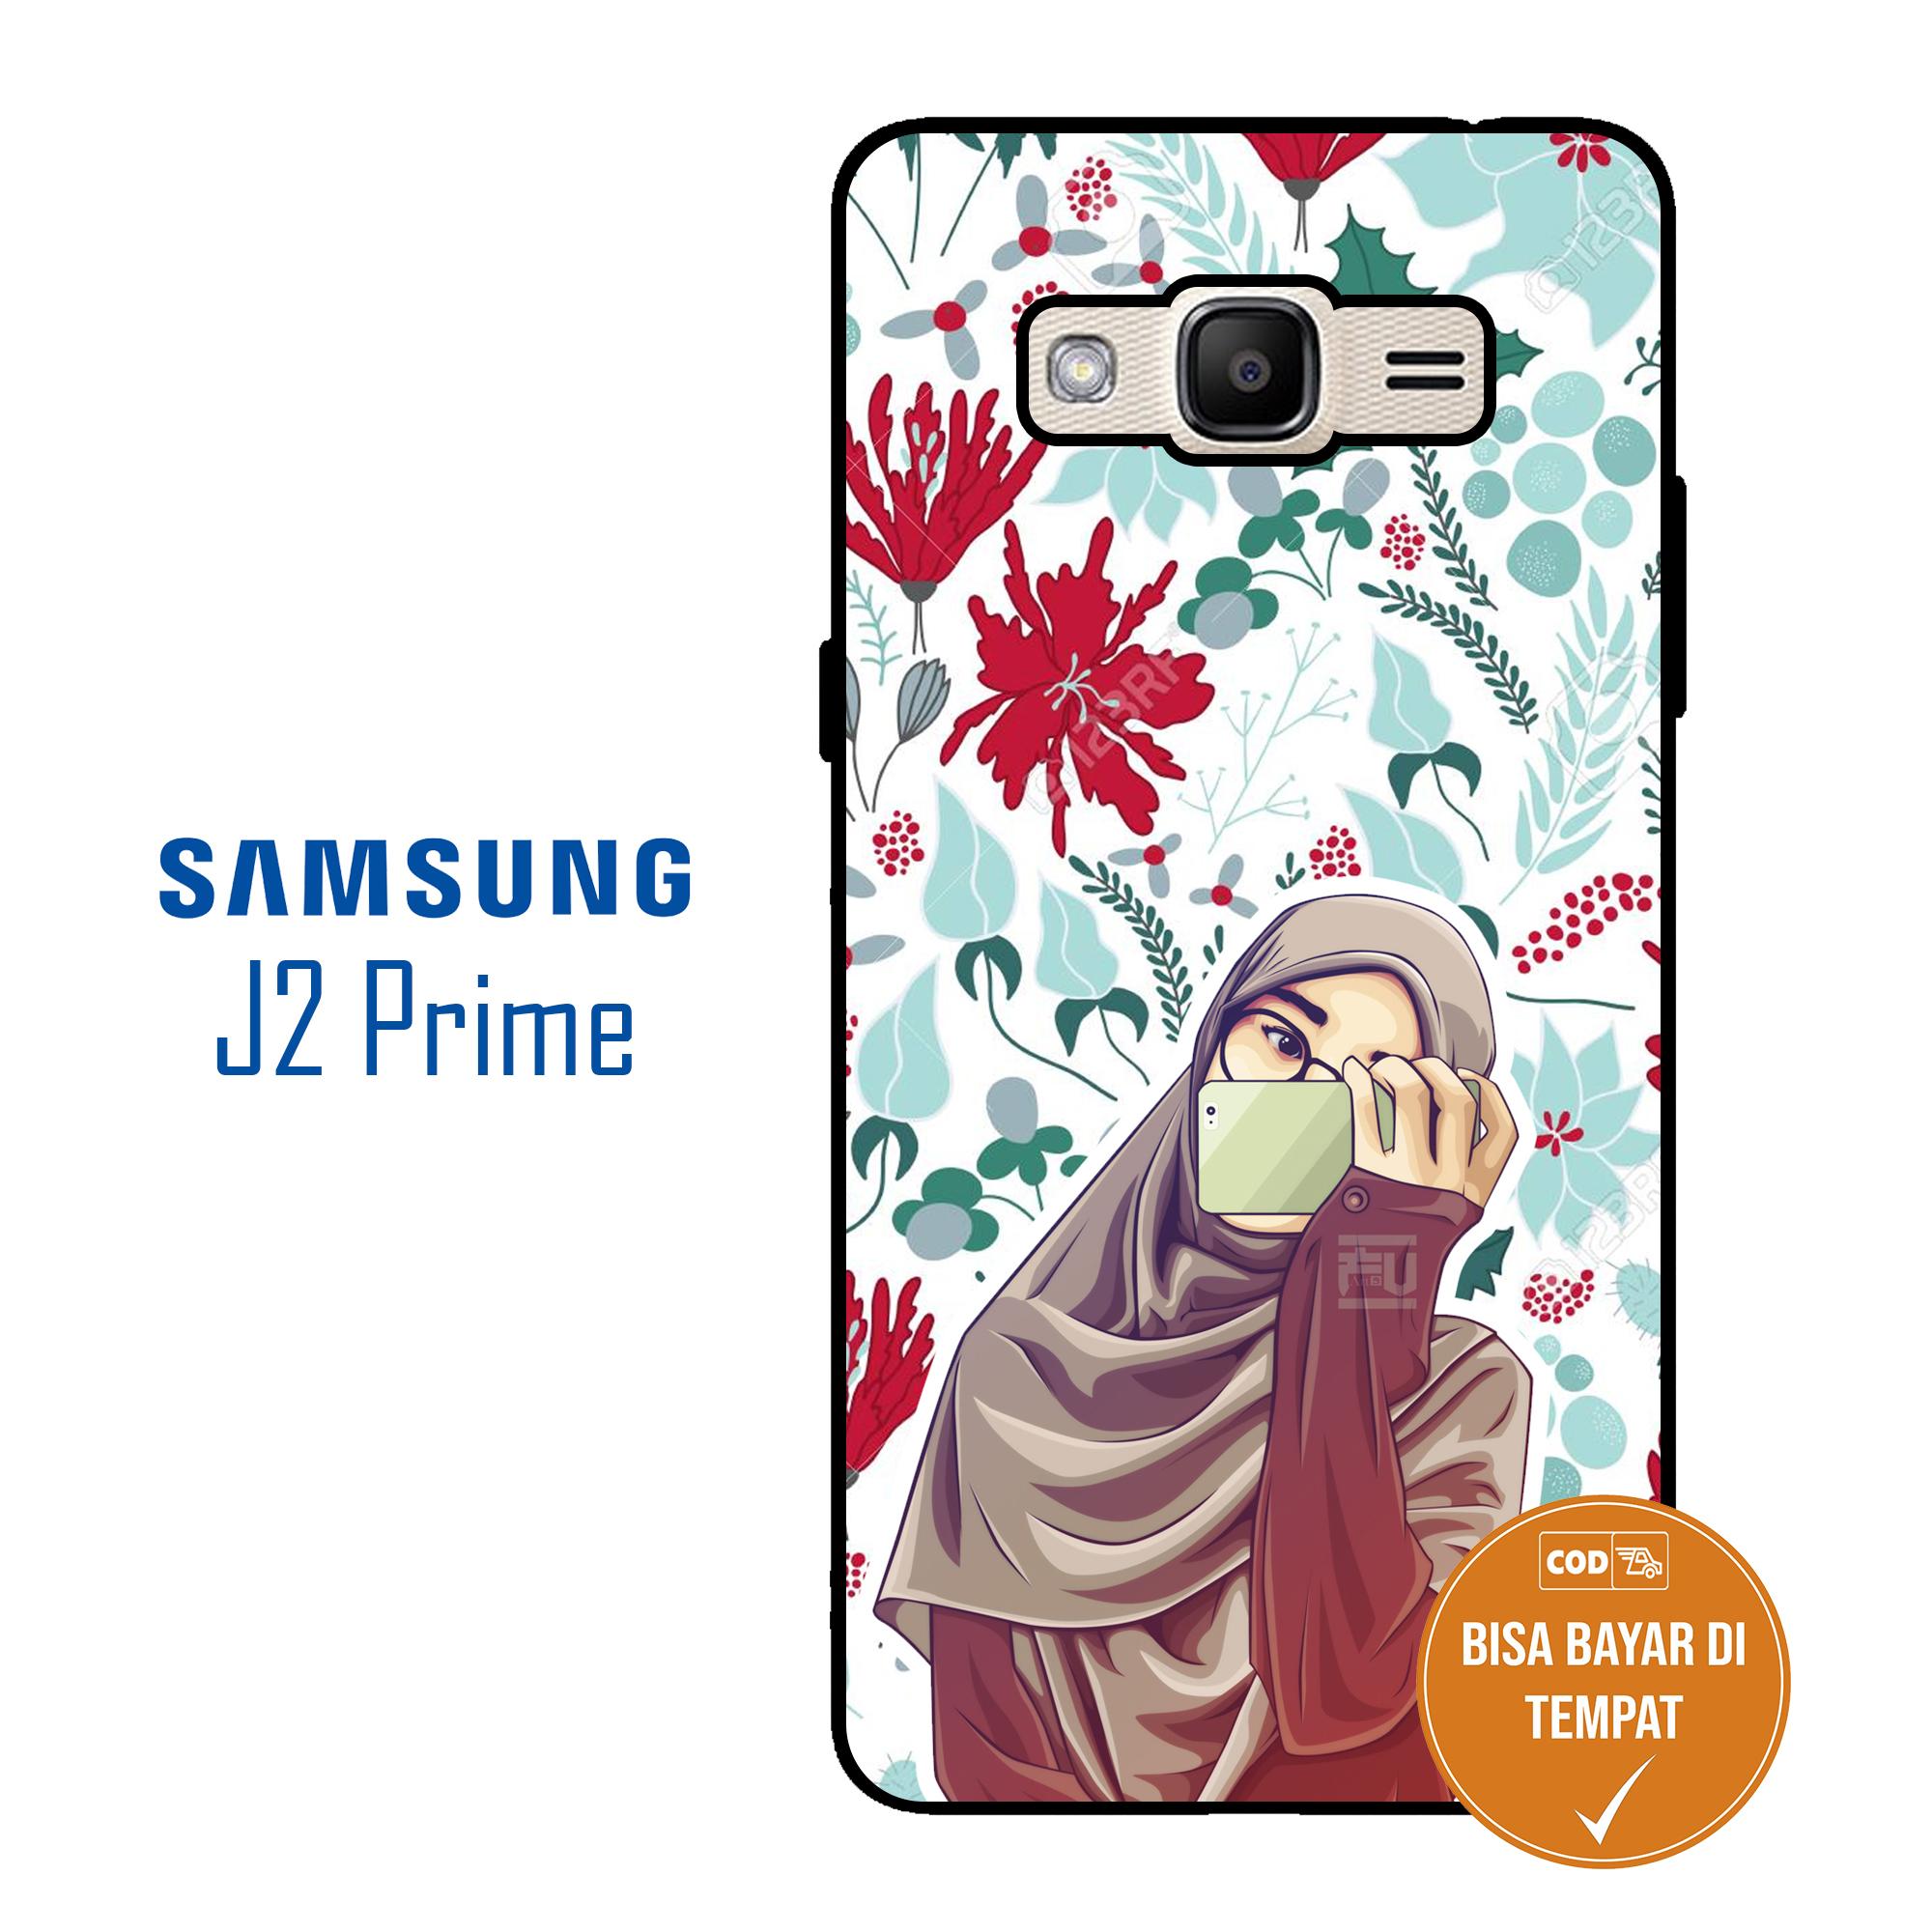 Phone Case Samsung J2 Prime Hijabers Cute 2 09 Jolera Soft Case Hard
Case Cassing Hp Kondom Hp Case Cover Hp